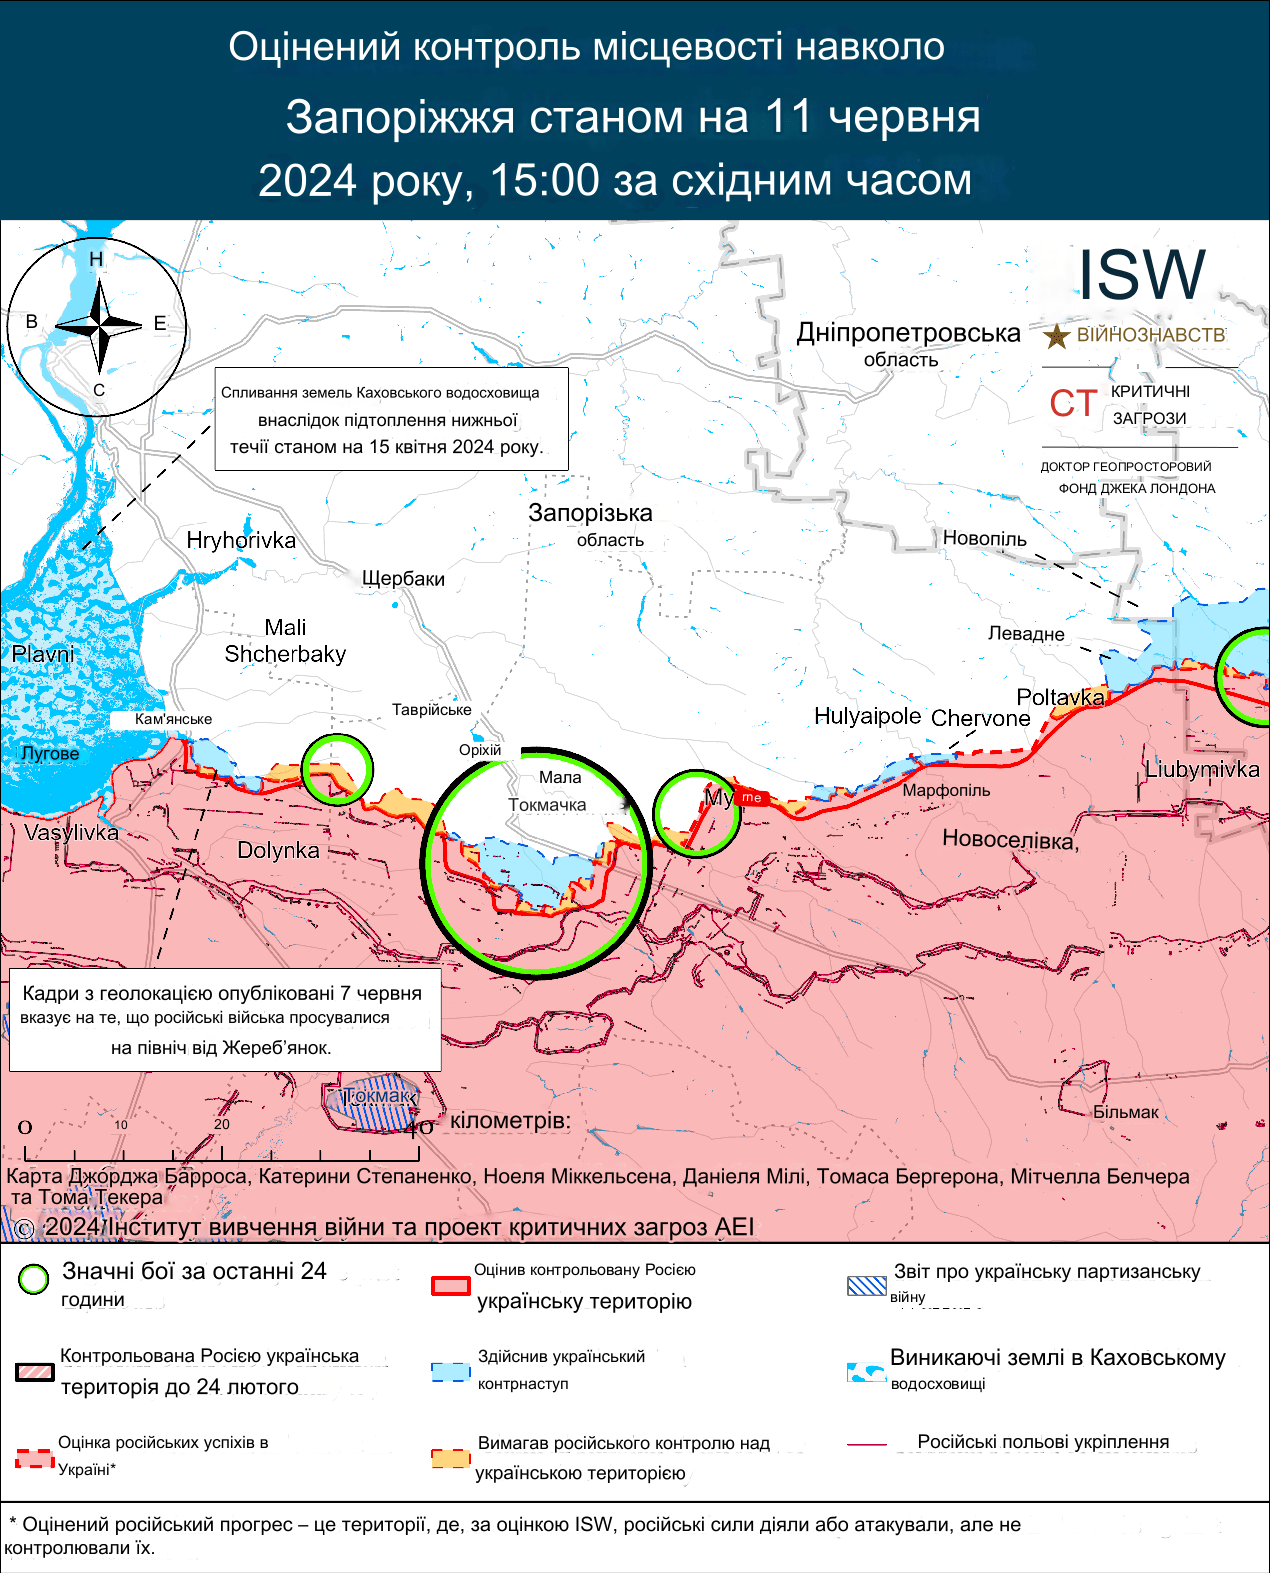 11 червня Пологівський район Запорізької області. Мапа боїв